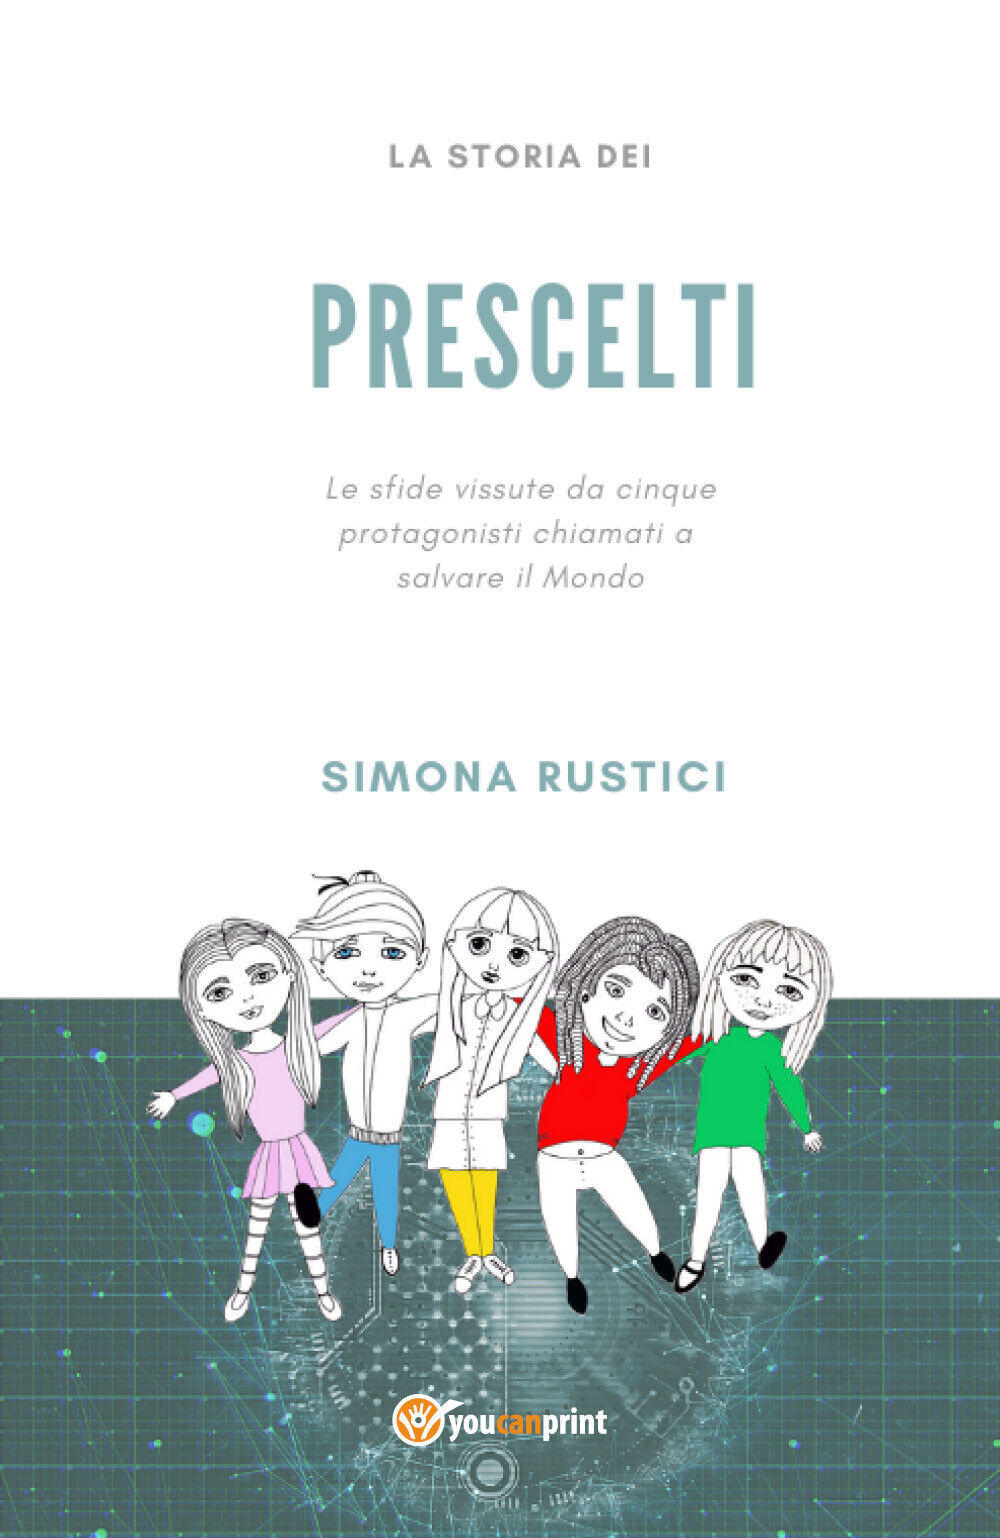 La storia dei prescelti  di Simona Rustici,  2020,  Youcanprint